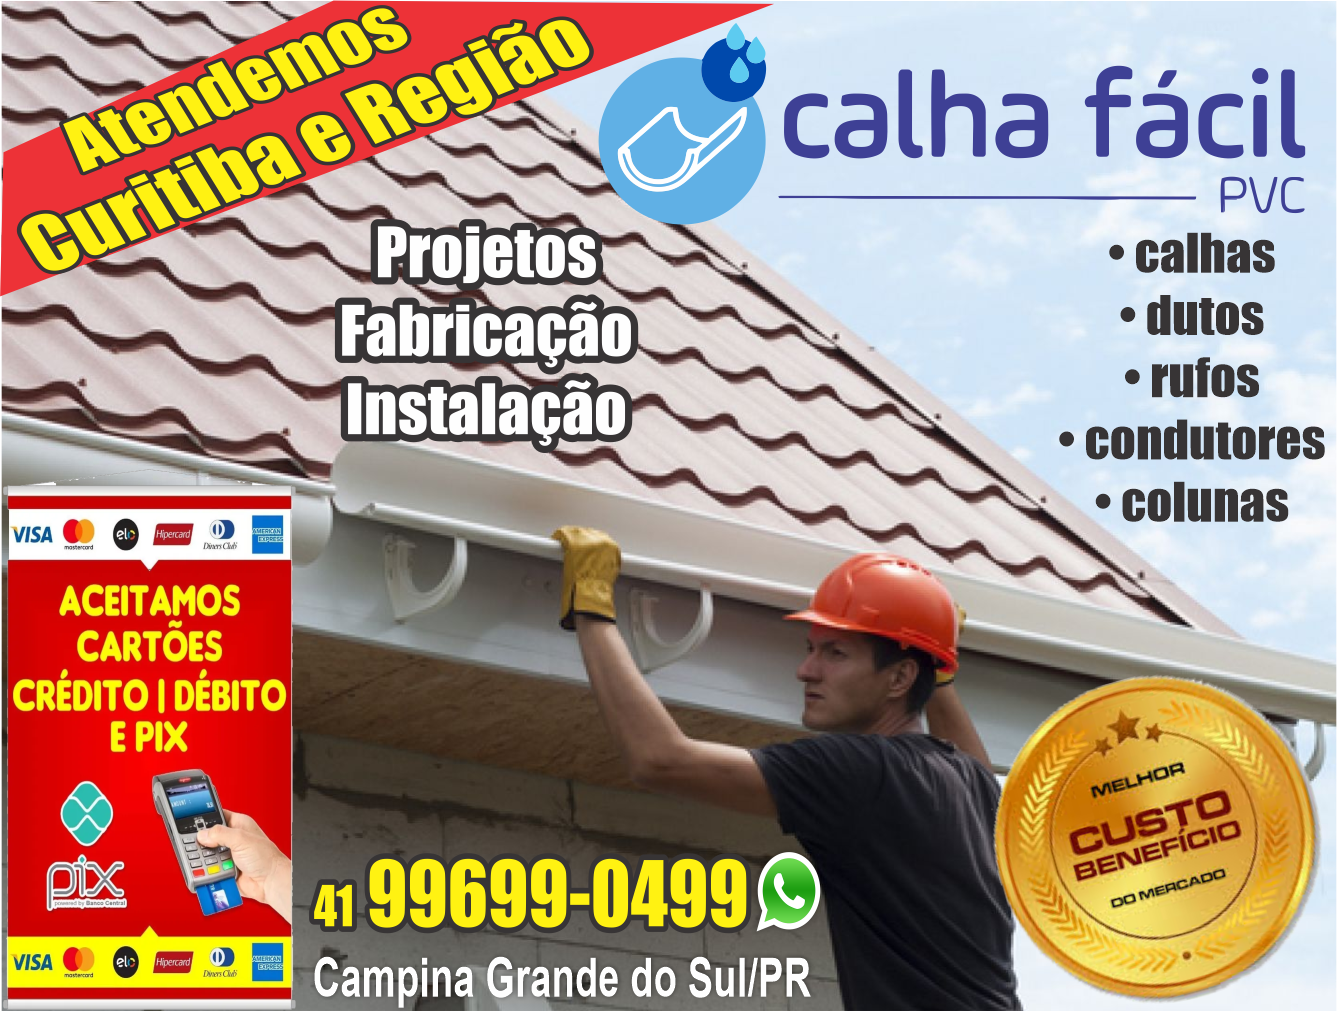 Calha Fácil PVC      Fones: (41) 99699-0499 /